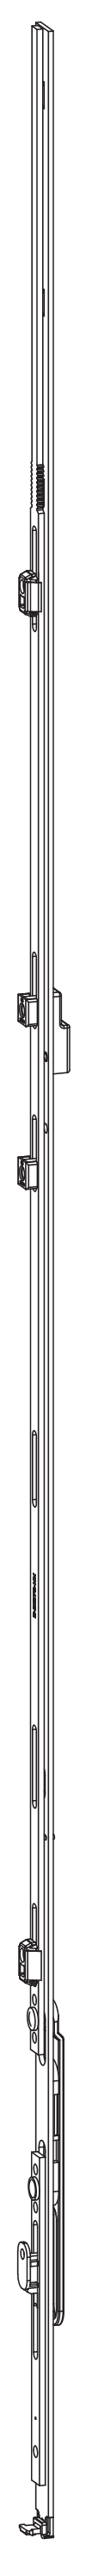 GU-ITALIA -  Catenaccio UNI-JET asta a leva altezza maniglia fissa per seconda anta - gr / dim. 516 - alt. man. LEVA ZH - lbb/hbb 1851 - 2100